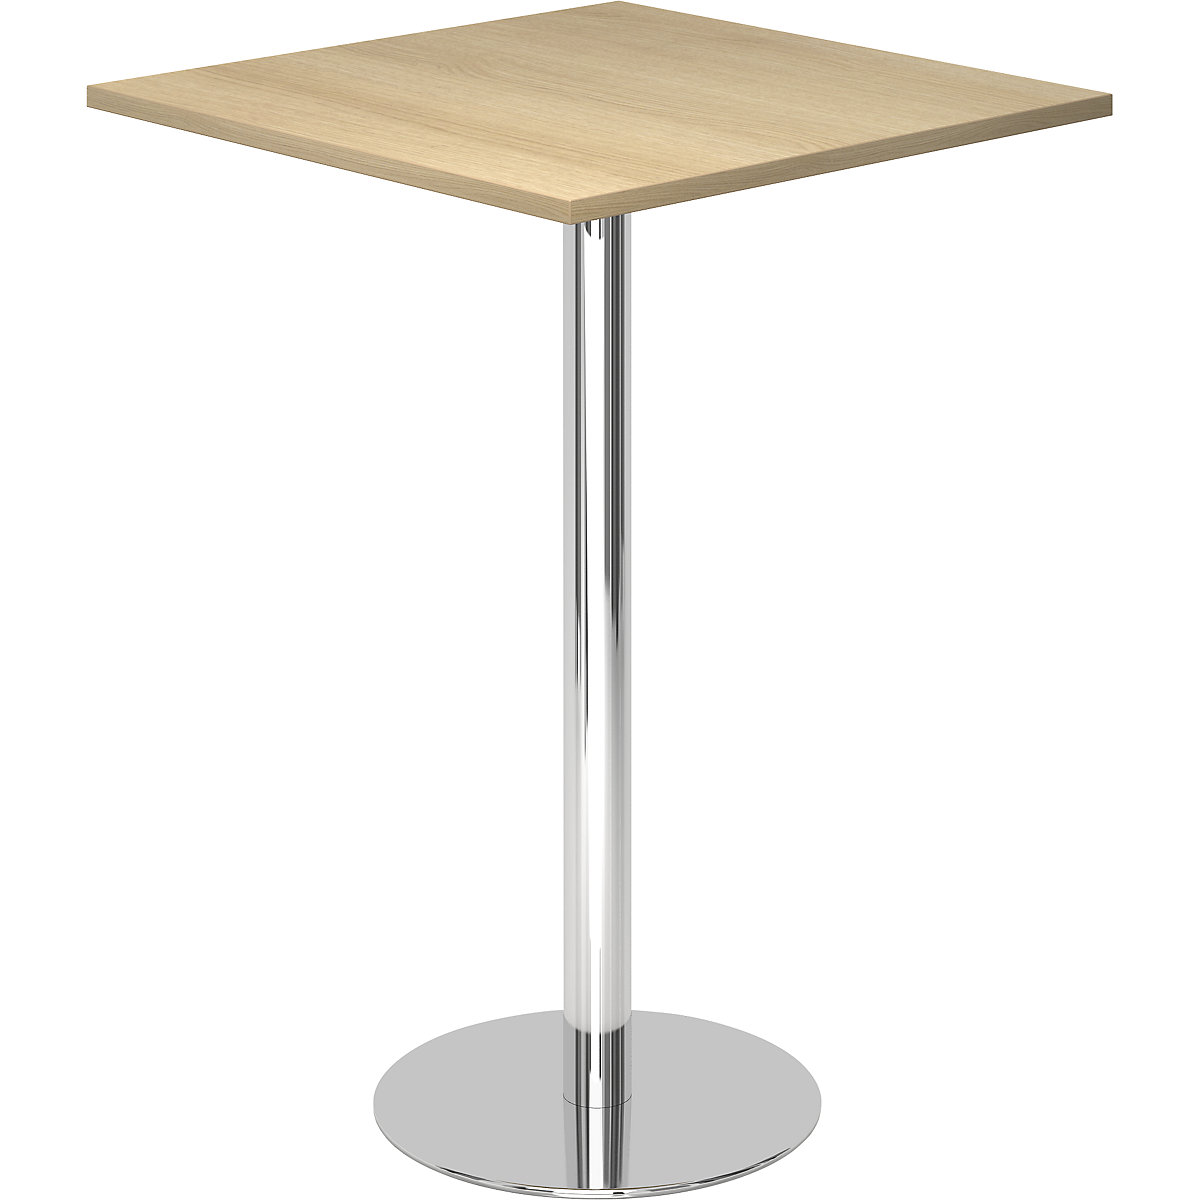 Állóasztal, h x szé 800 x 800 mm, 1116 mm magas, krómozott váz, tölgyfa-dekor asztallap